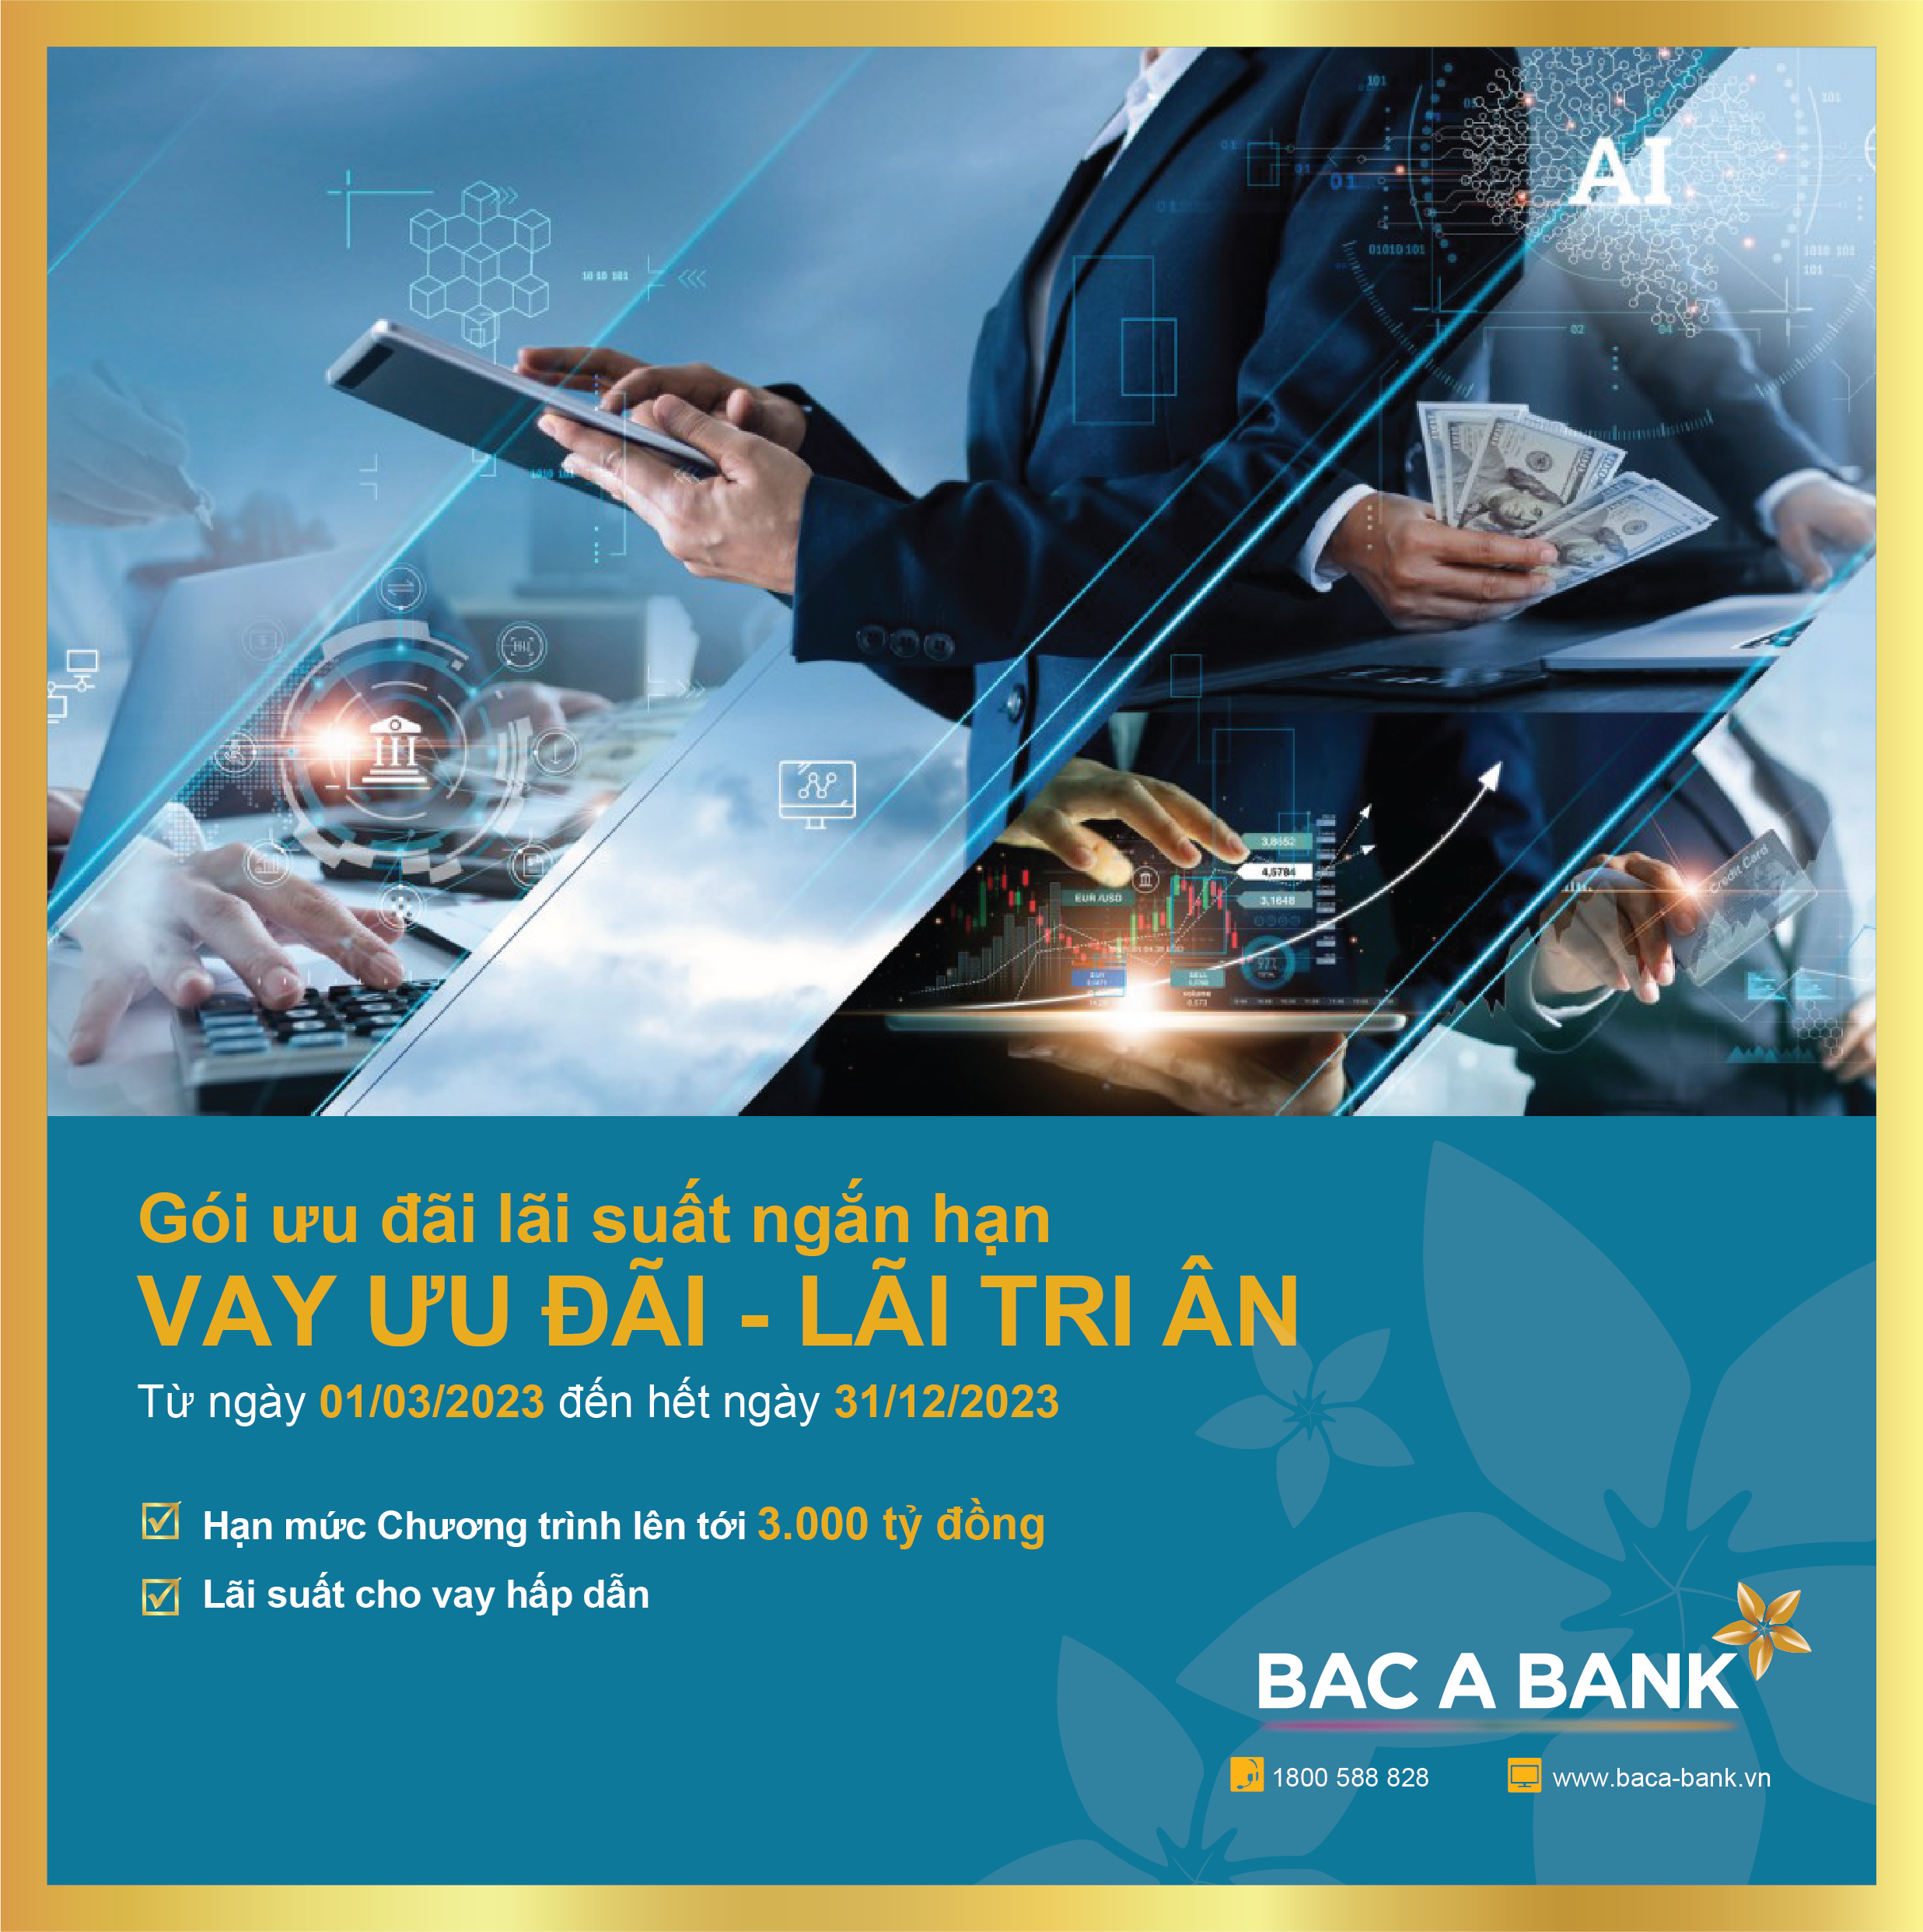 Kinh tế - “Vay ưu đãi - lãi tri ân” cùng BAC A BANK